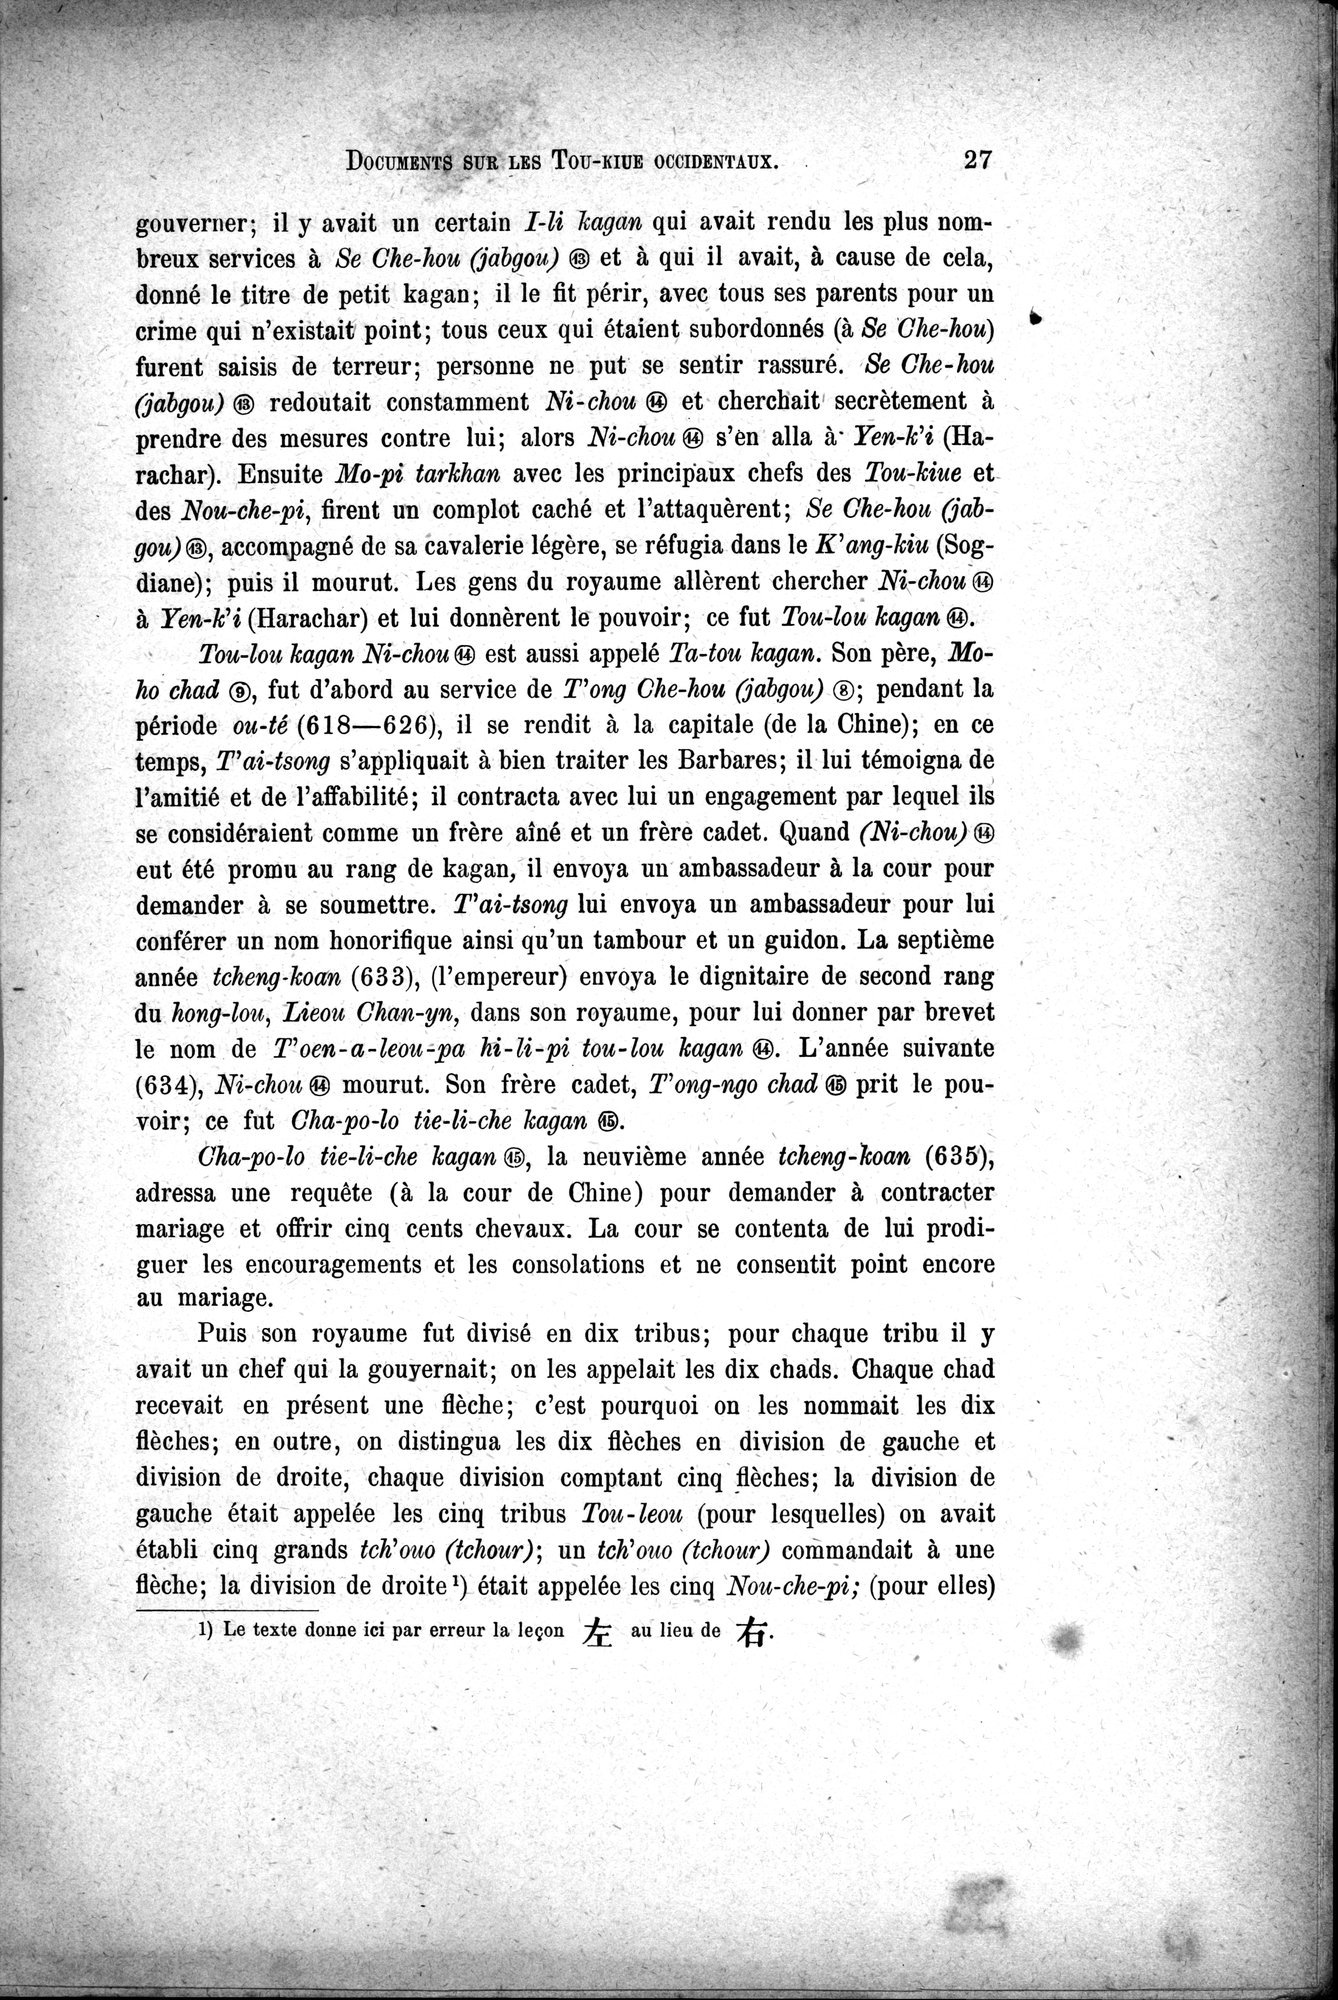 Documents sur les Tou-kiue (Turcs) occidentaux : vol.1 / Page 37 (Grayscale High Resolution Image)